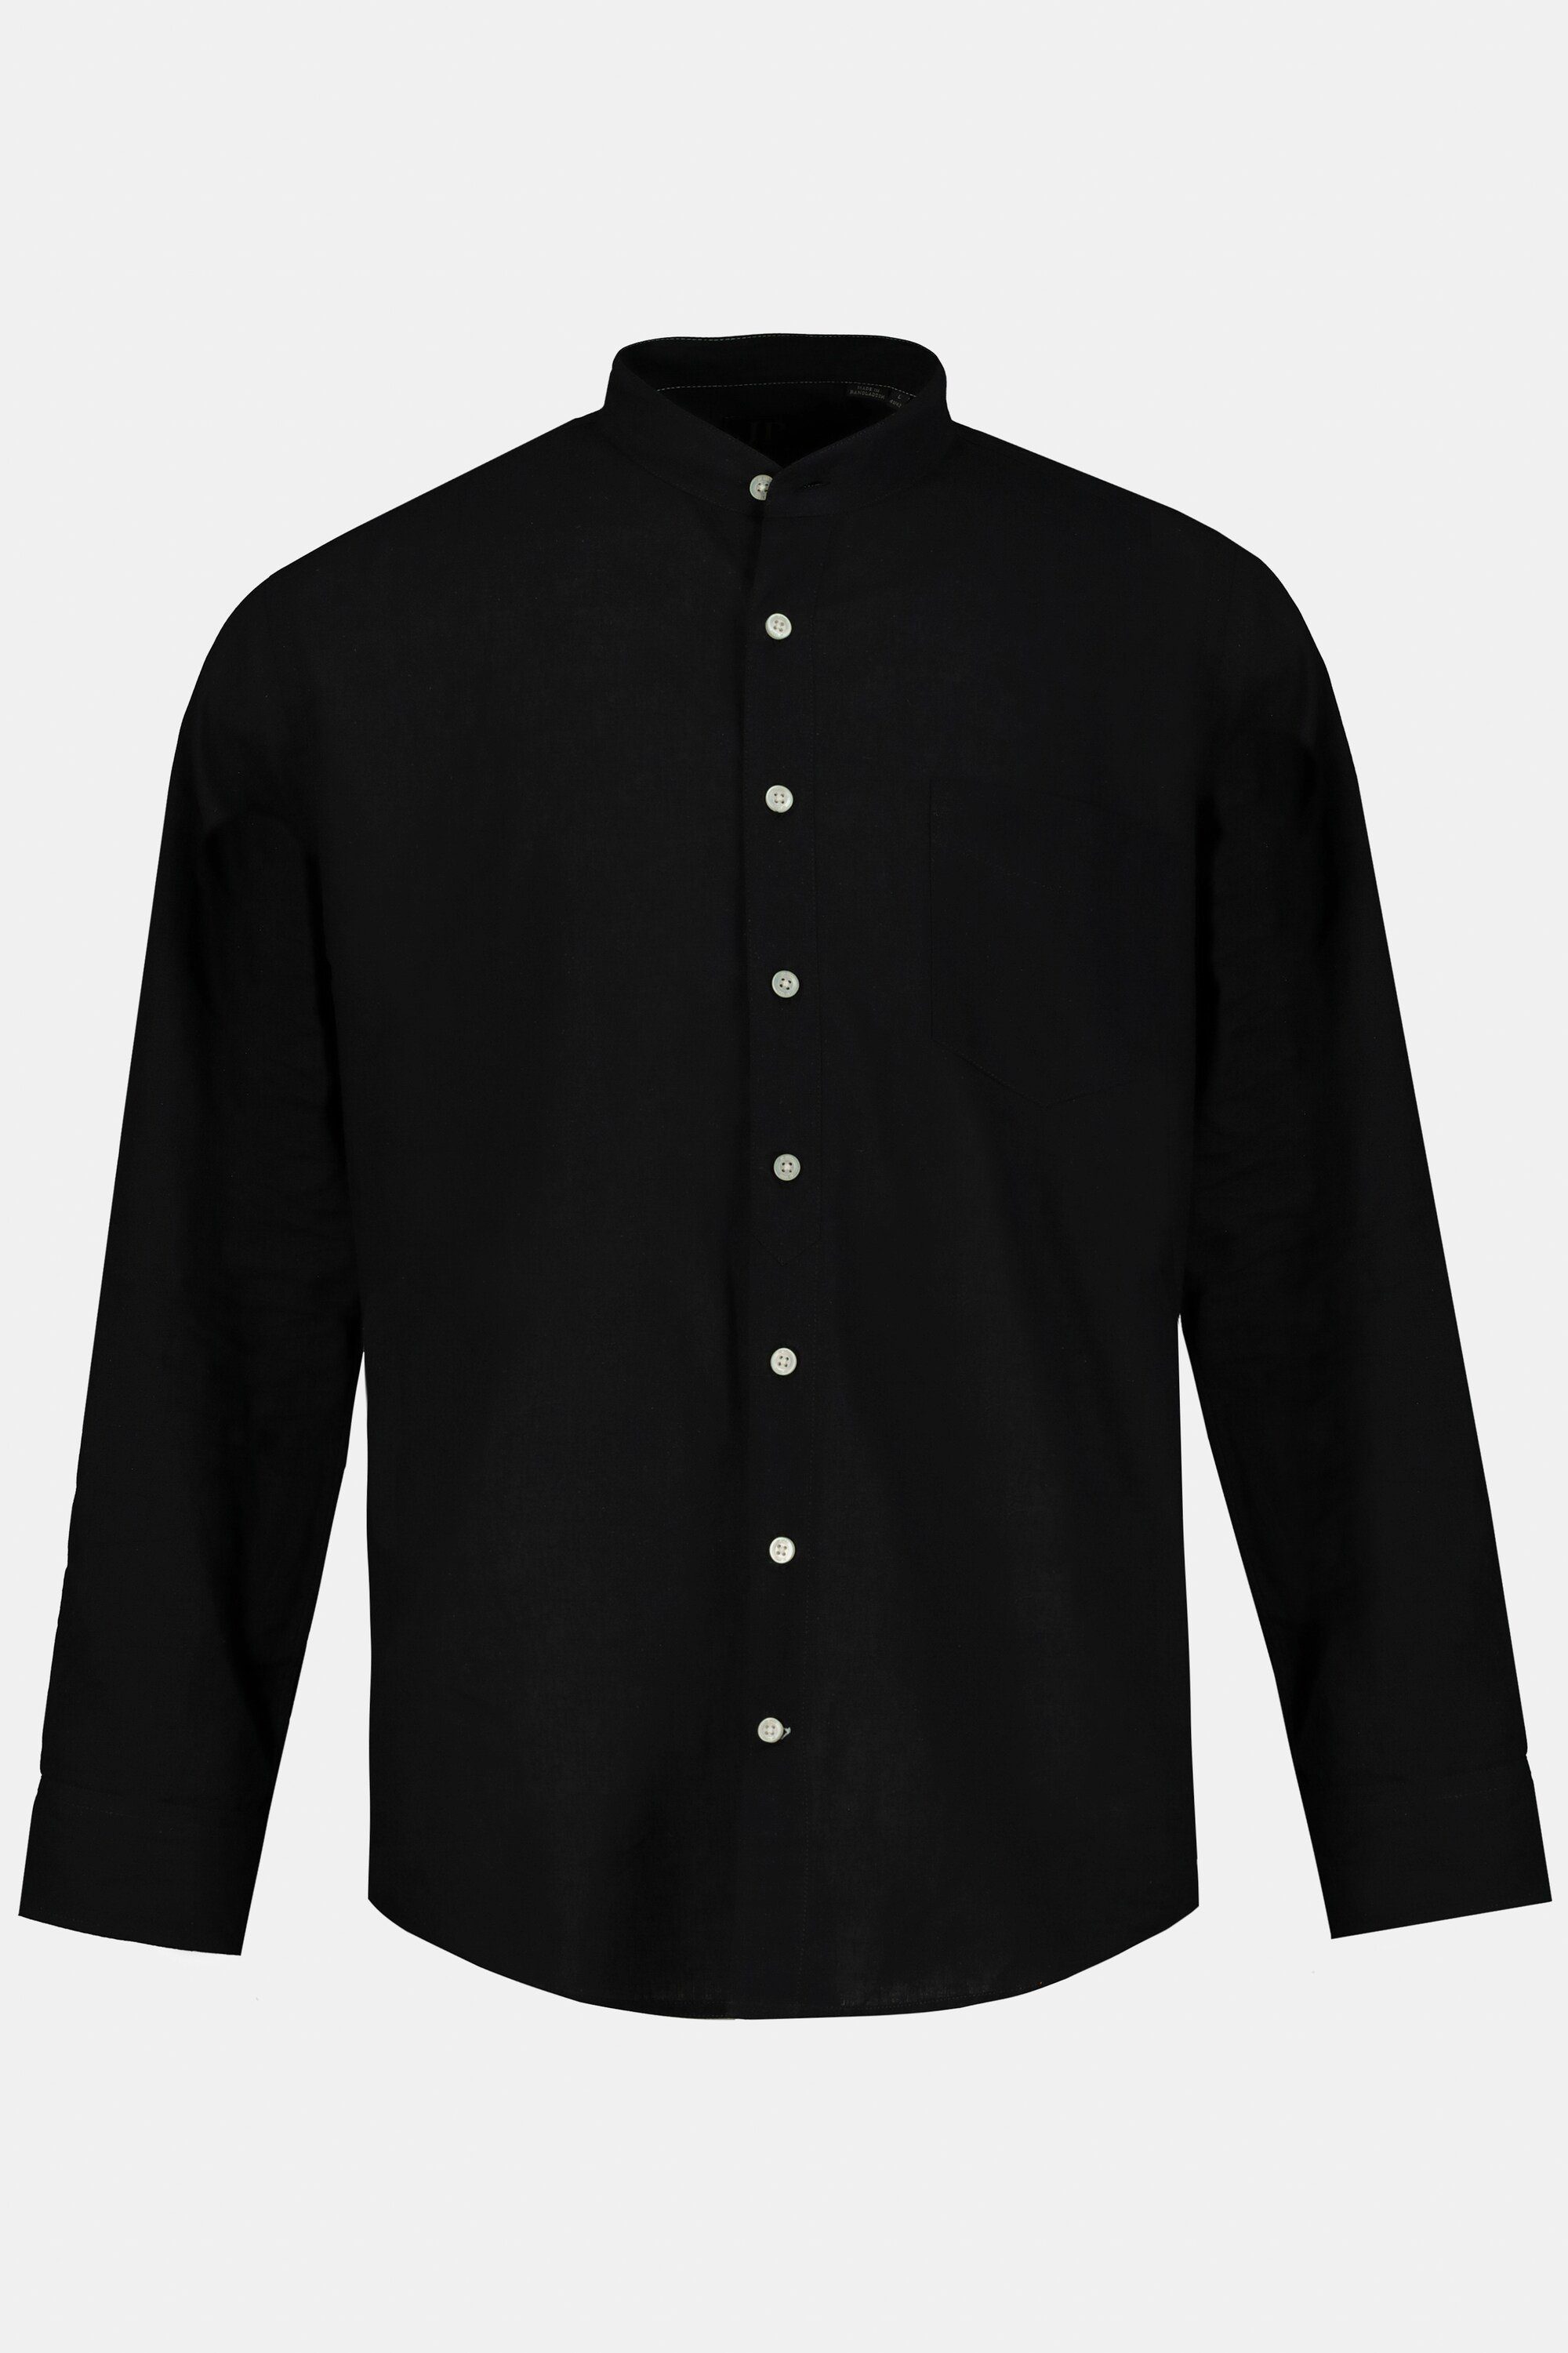 Langarm Fit Stehkragen JP1880 Modern schwarz Leinenmixhemd Businesshemd